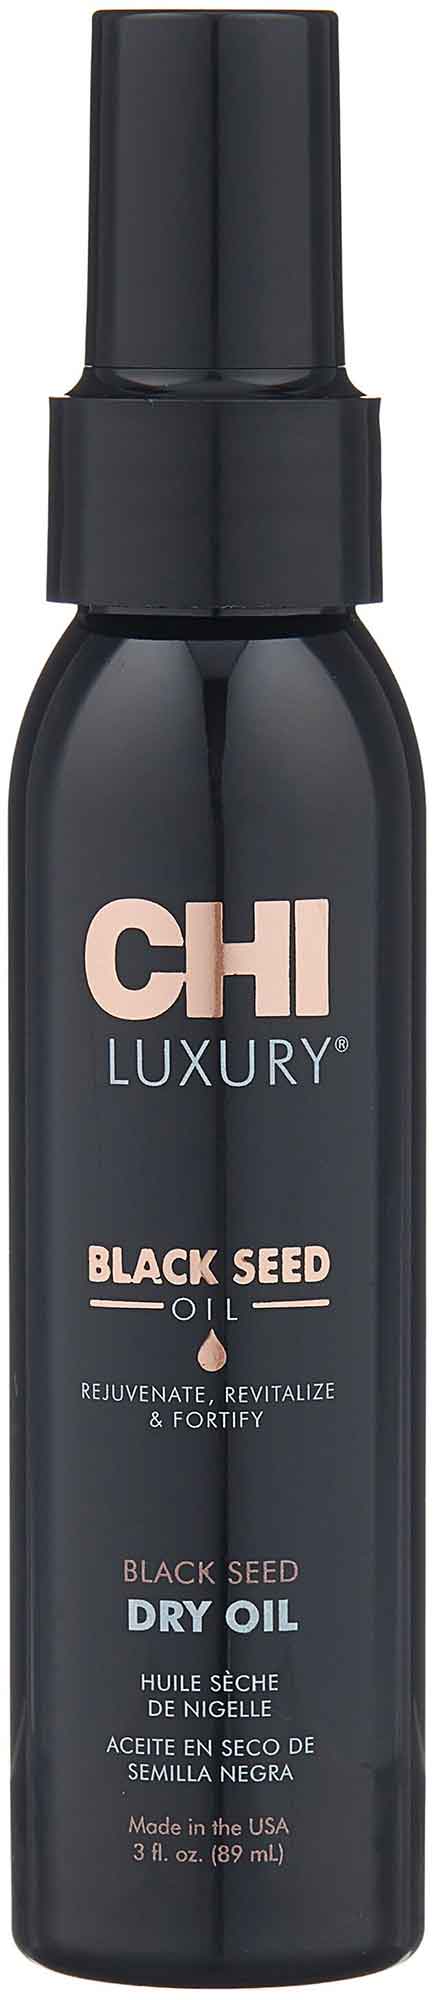 Масло сухое CHI Luxury с экстрактом семян чёрного тмина, 89 мл, CHILBSO03